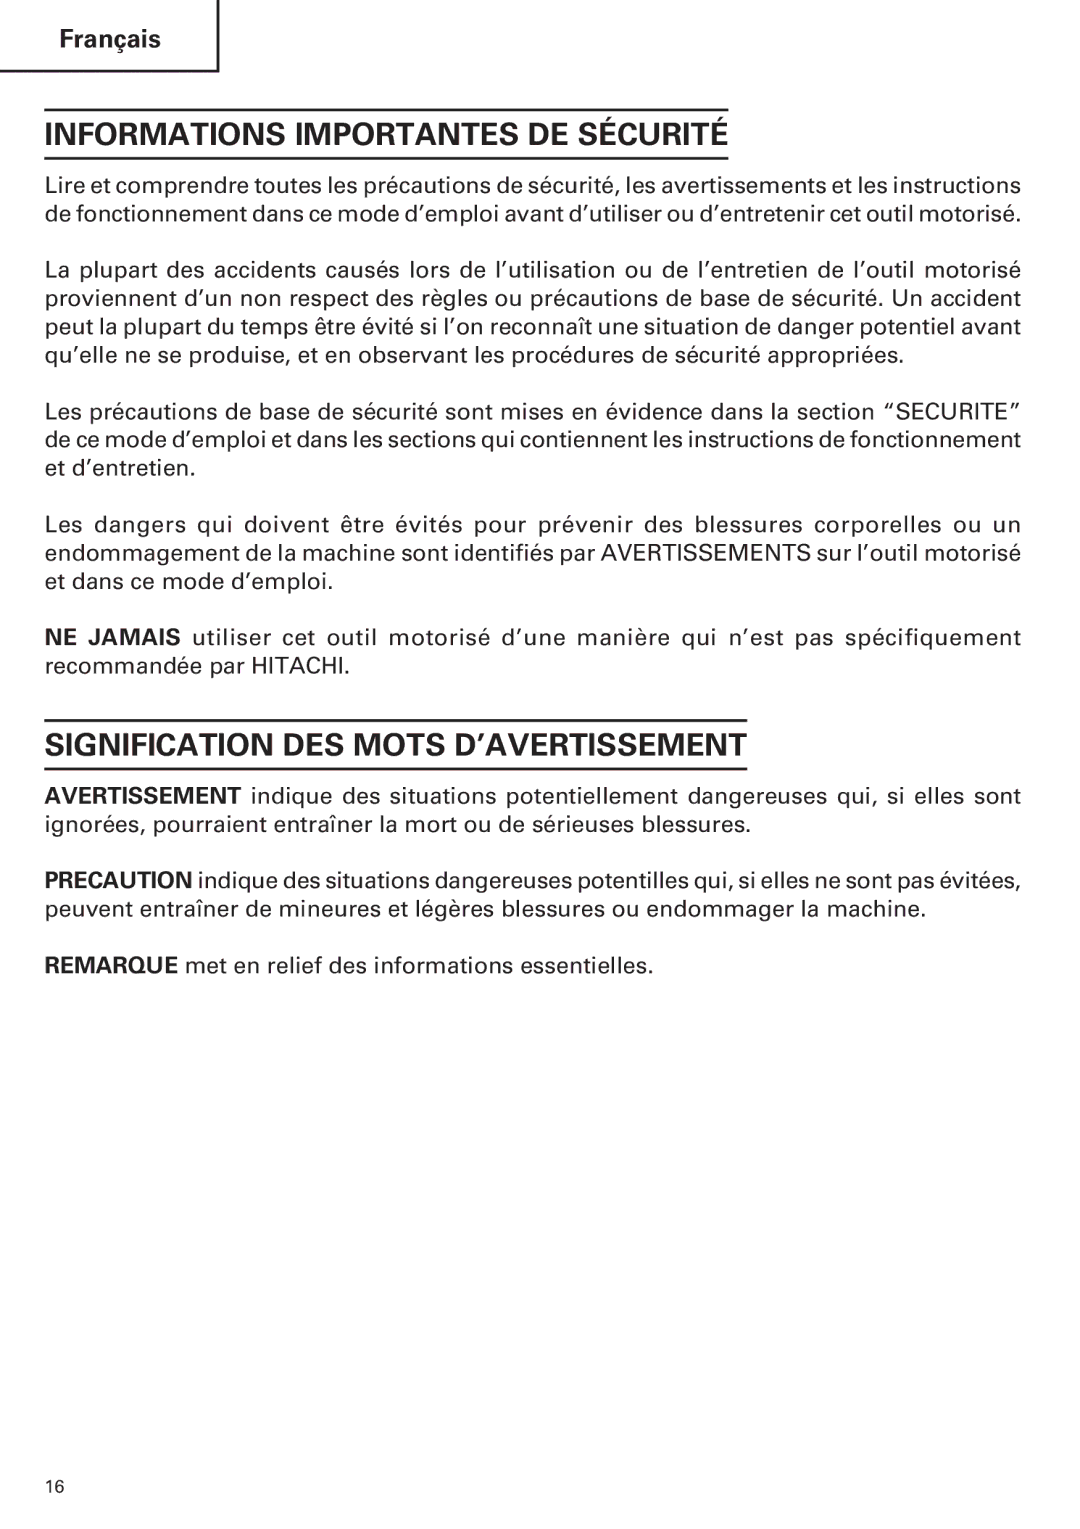 Hitachi CE 16SA instruction manual Informations Importantes DE Sécurité, Signification DES Mots D’AVERTISSEMENT 